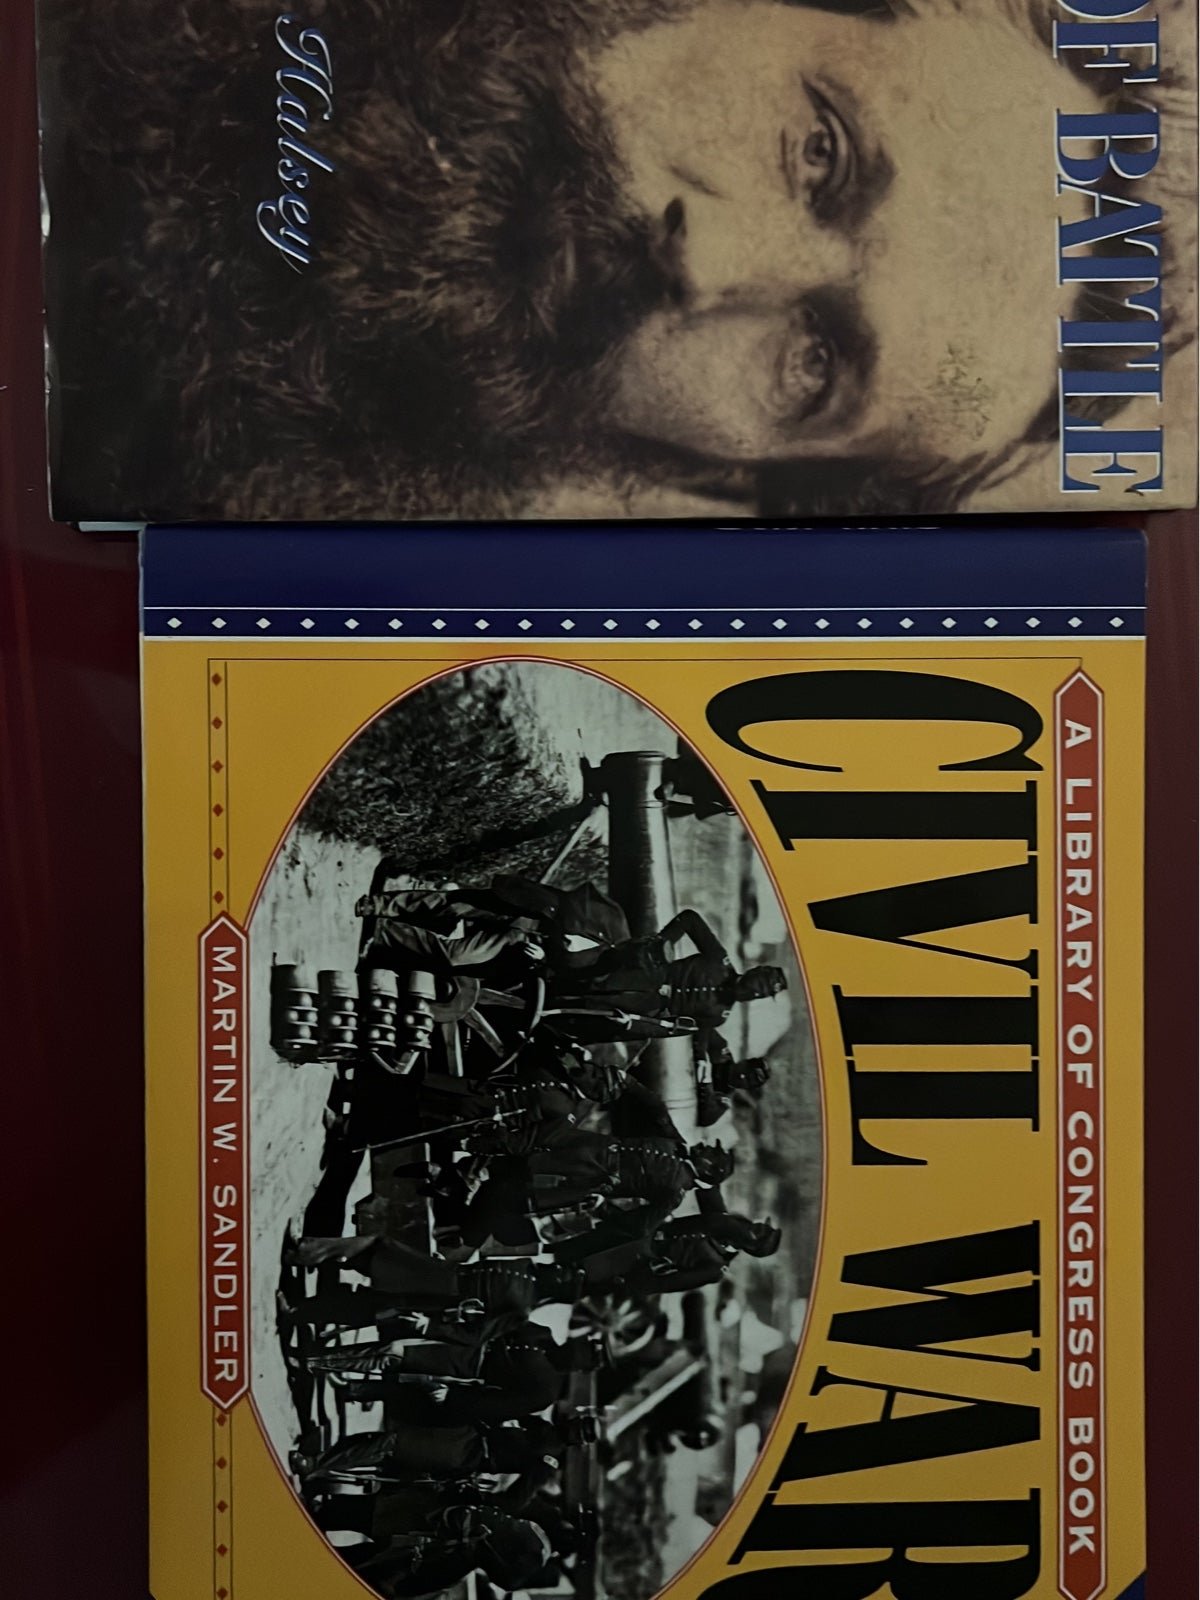 Two civil war educational books g7qdnF0JO